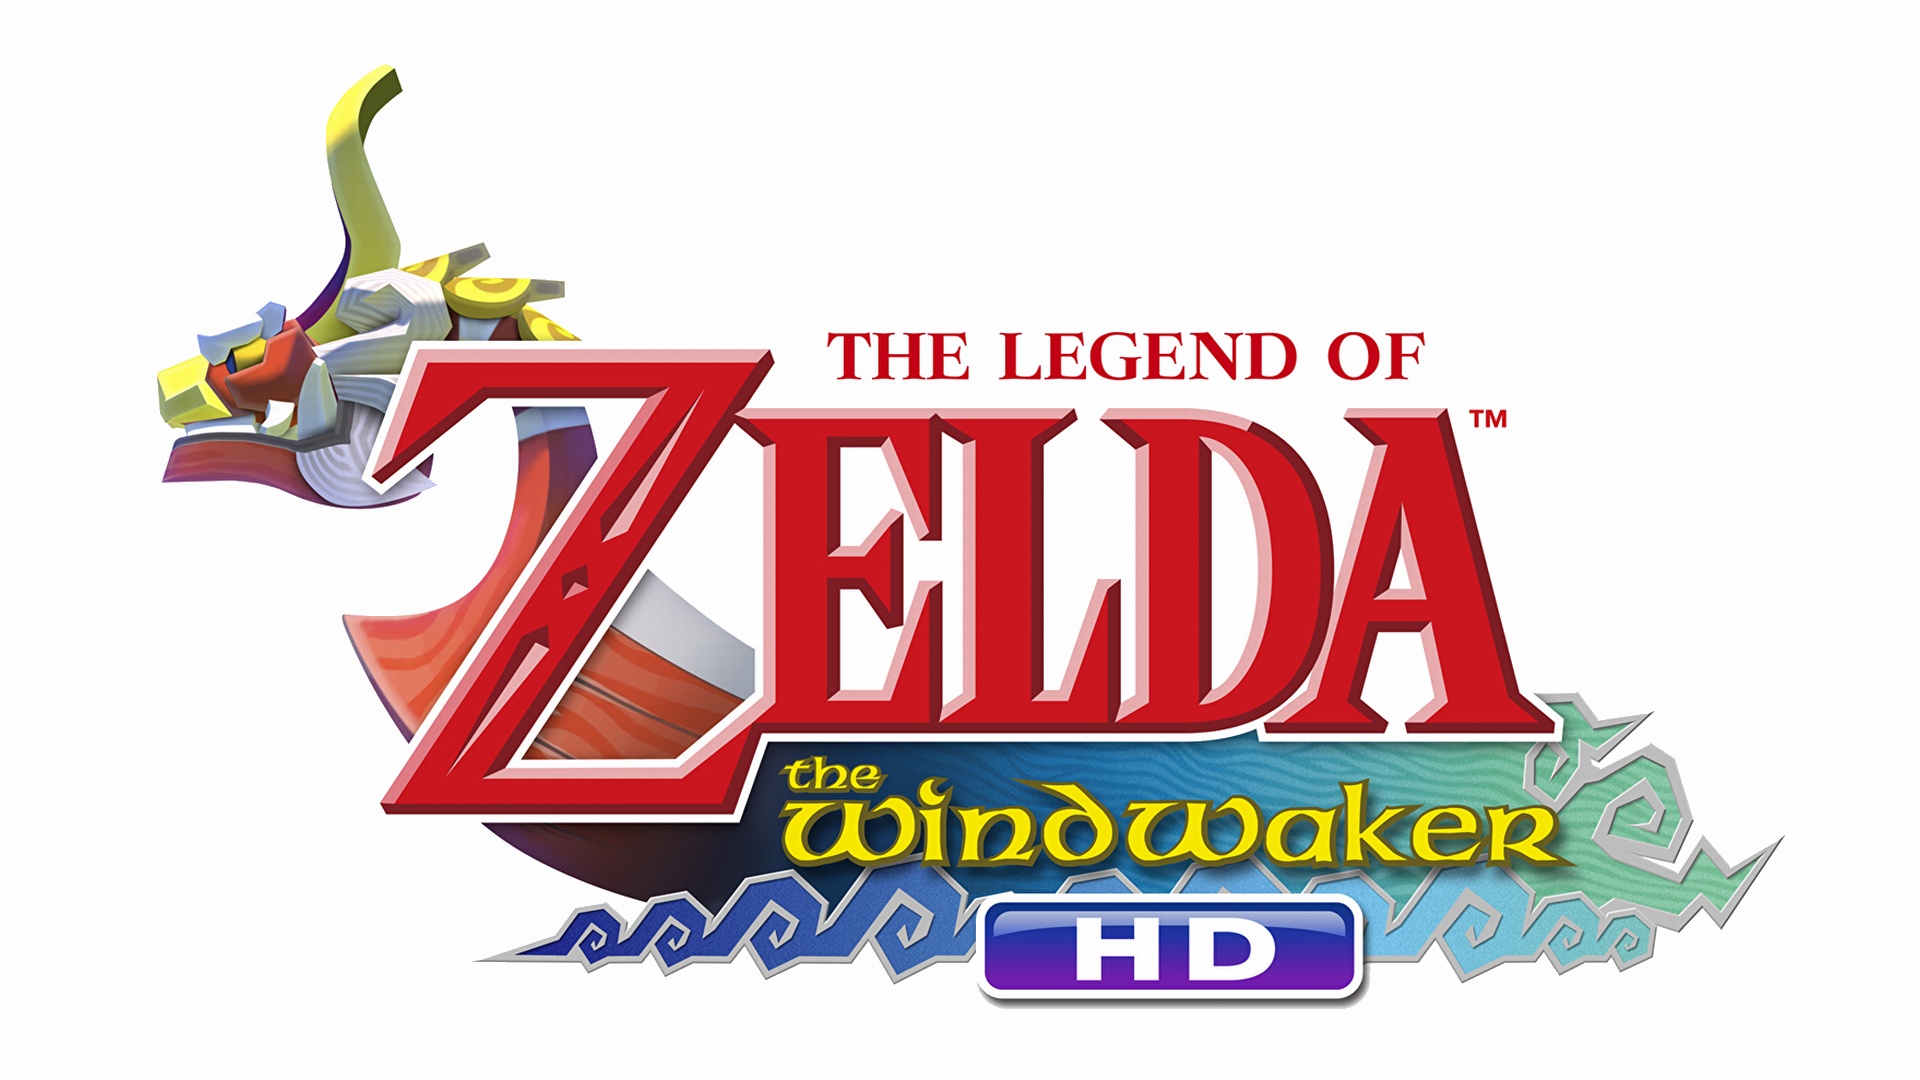 The Legend of Zelda: The Wind Waker HD Logo